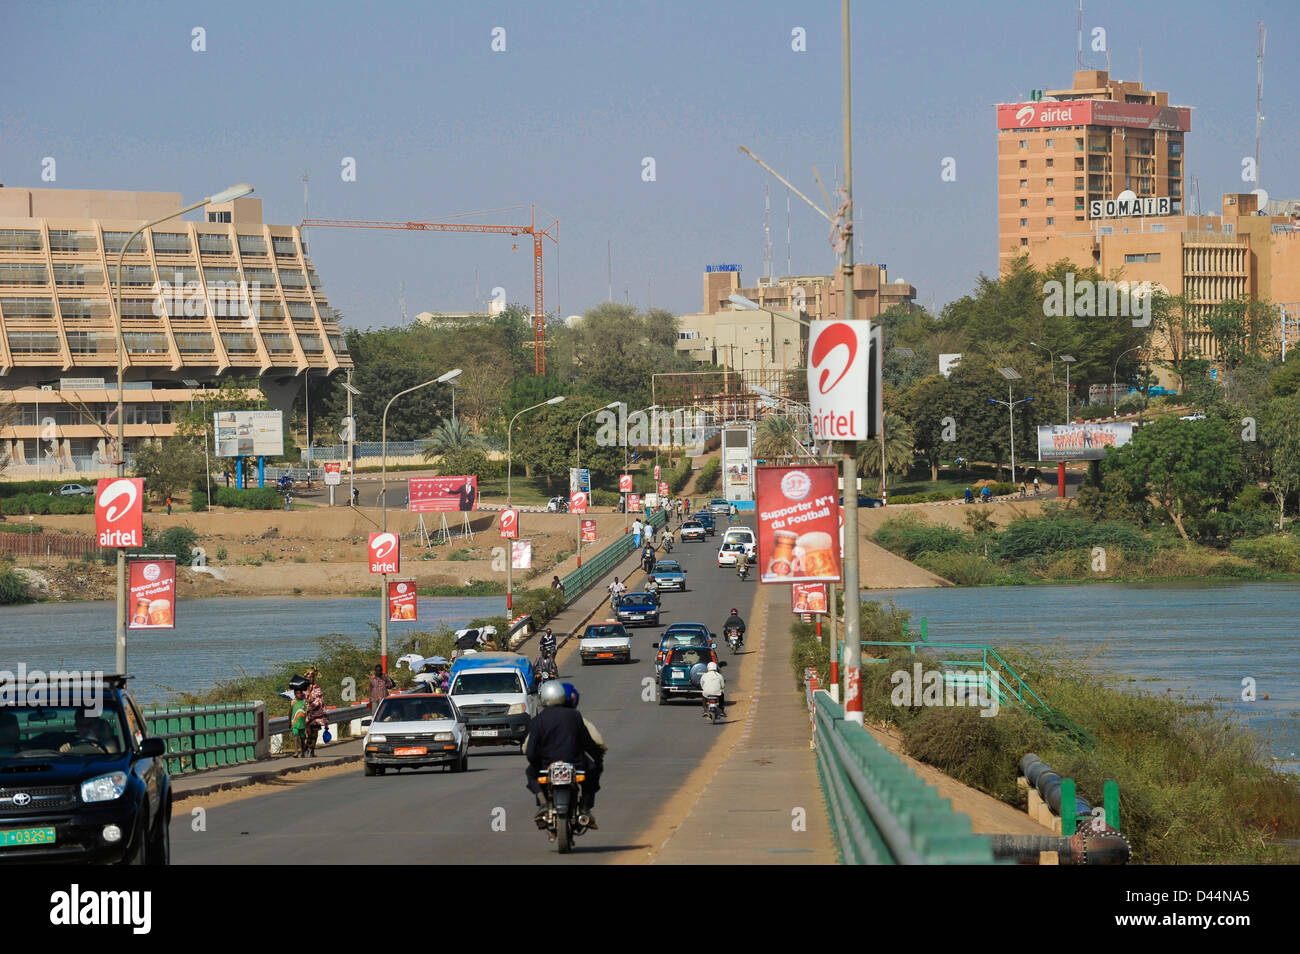 NIGER Niamey, Kennedy-Brücke über den Niger, links Hotel Gaweye und rechts Somair, Société des Mines de l'Air, Hauptsitz des nationalen Bergbauunternehmens, das Uran in Arlit abbaut, französisches Energieunternehmen Orano, früher bekannt als Areva, hat einen Anteil von 63,4 Prozent, andere Anteile gehören dem nigrischen Staat Stockfoto